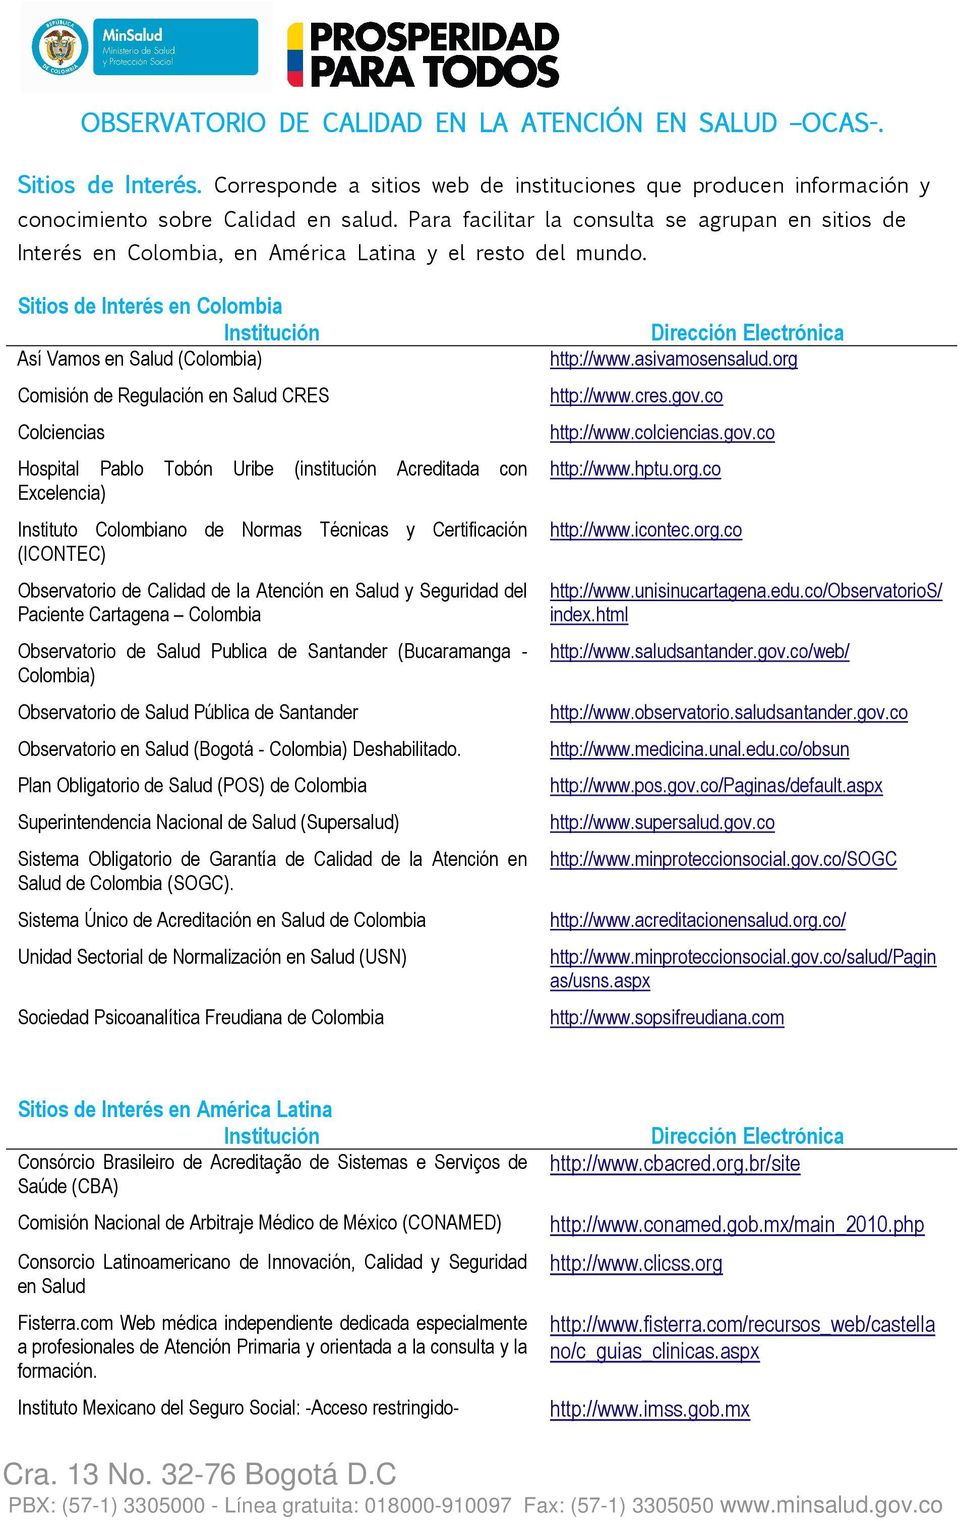 Sitios de Interés en Colombia Así Vamos en Salud (Colombia) Comisión de Regulación en Salud CRES Colciencias http://www.asivamosensalud.org http://www.cres.gov.